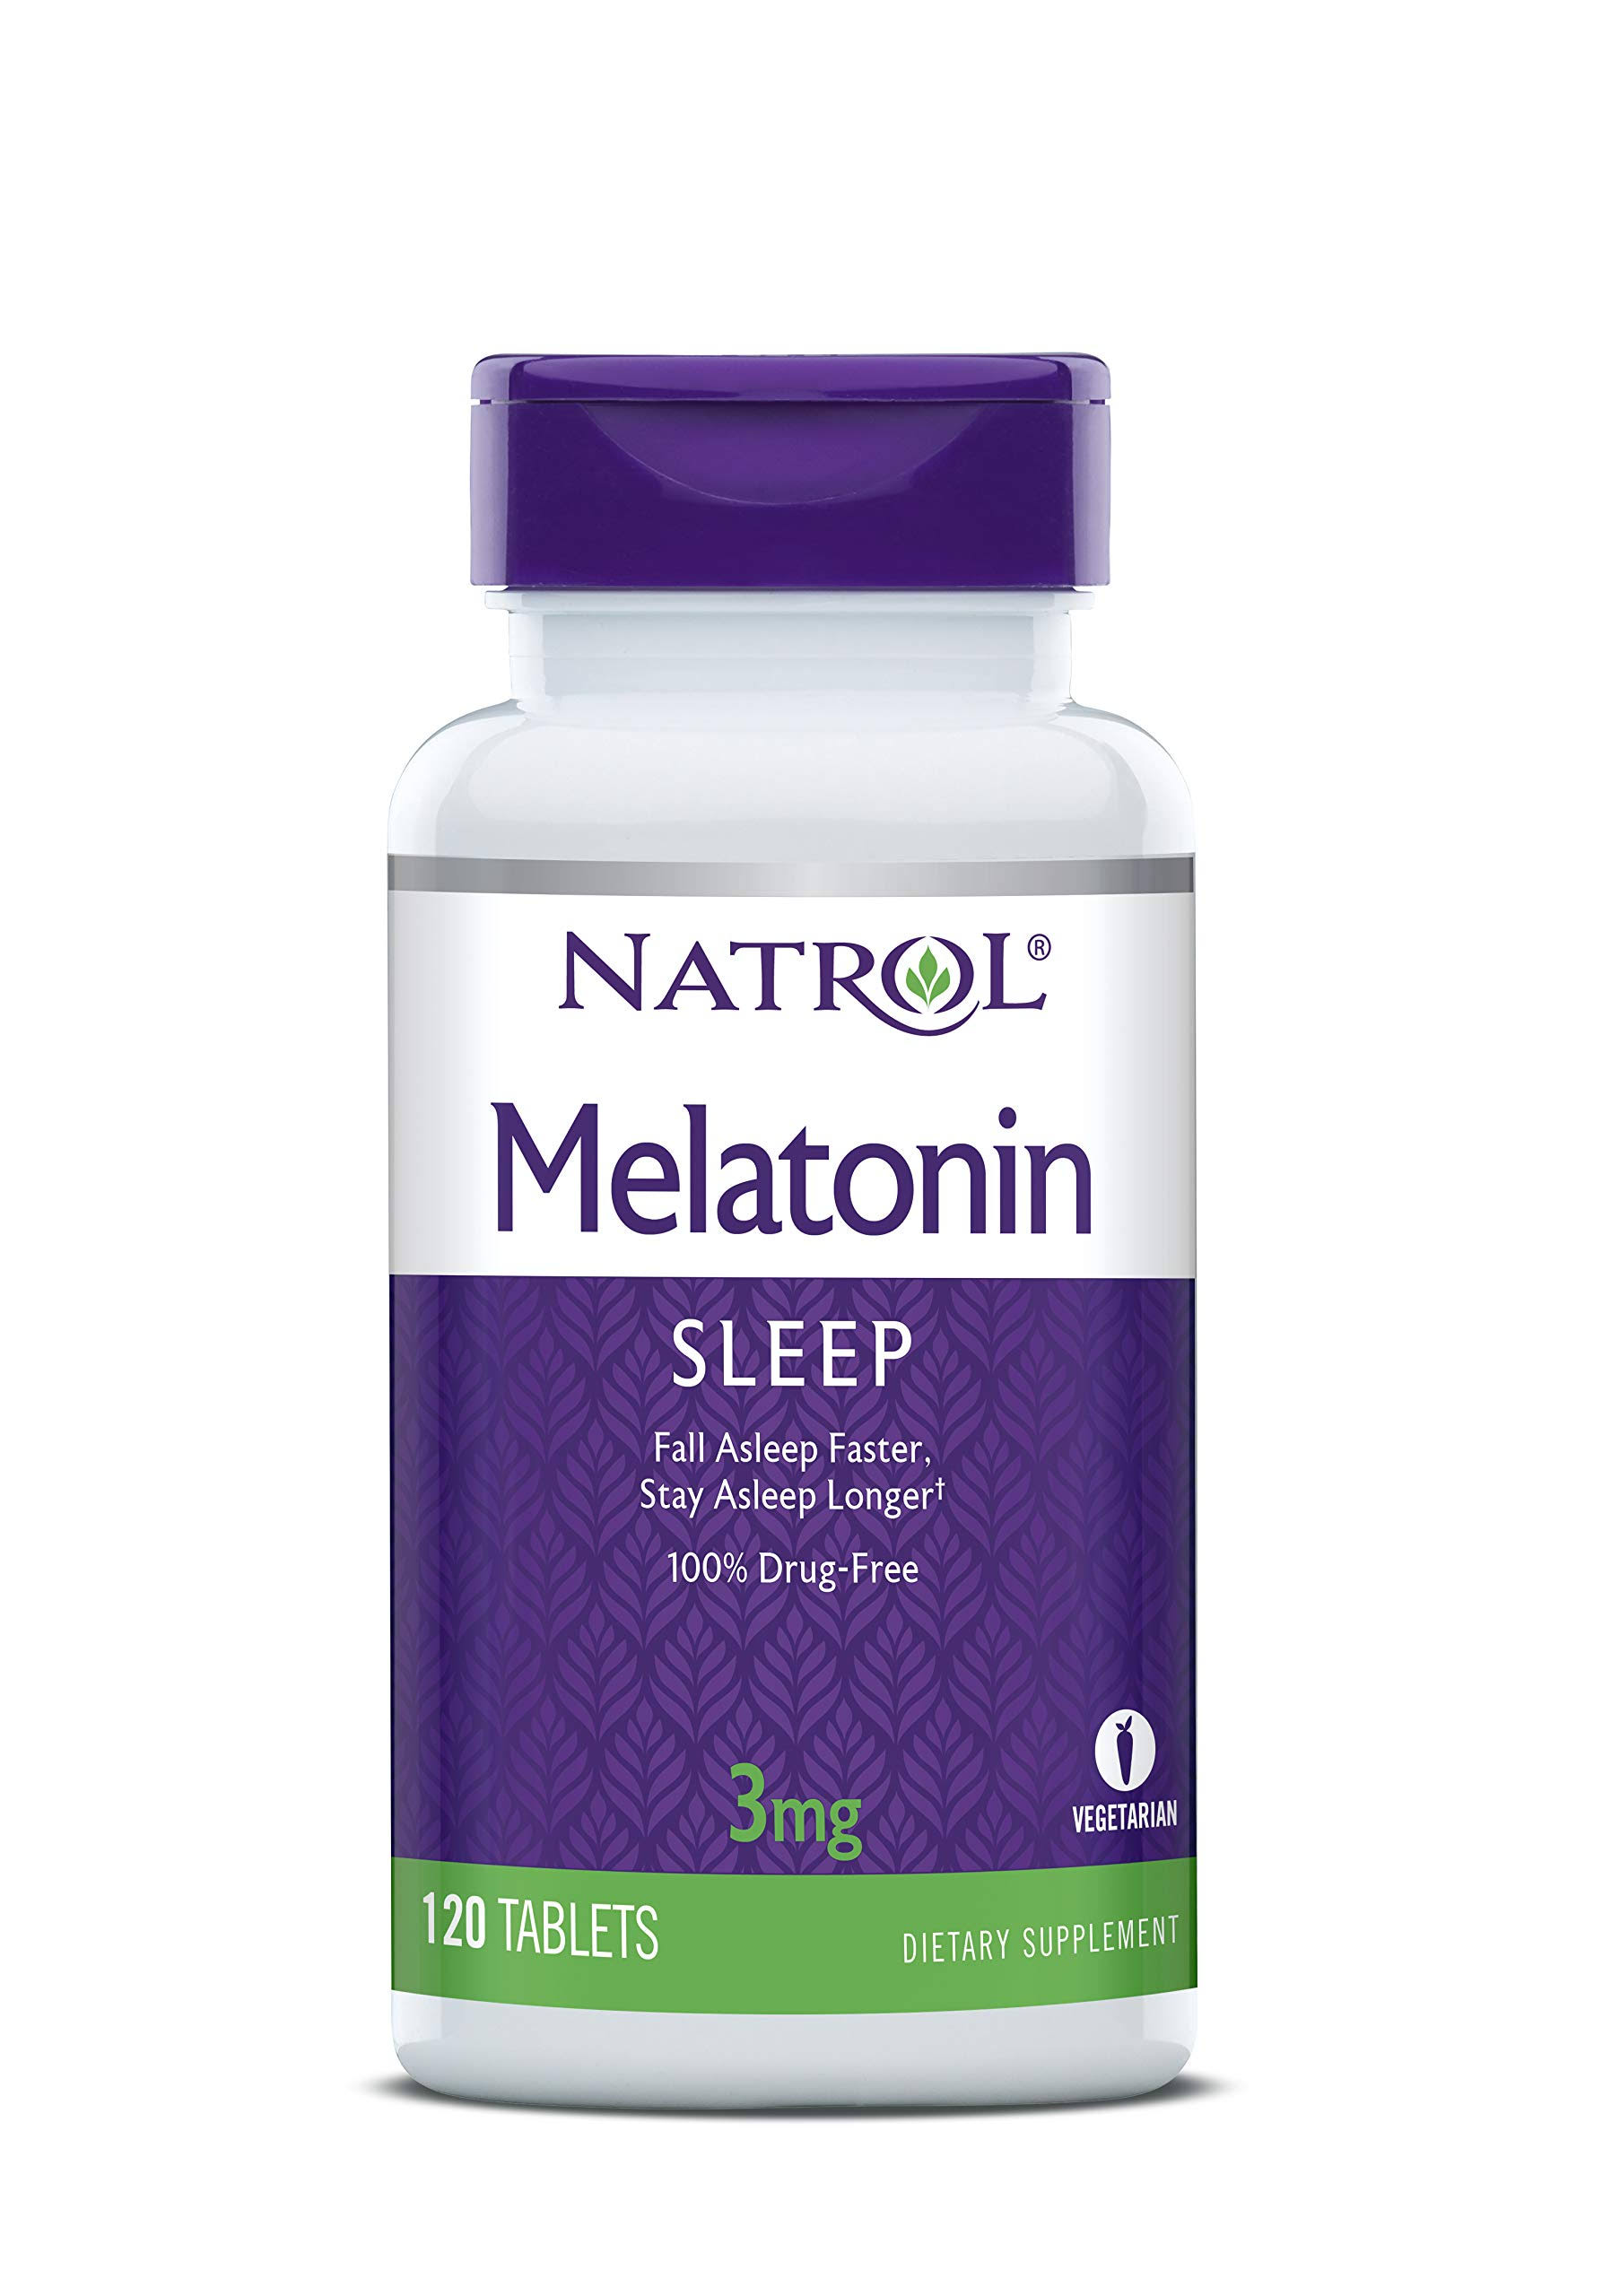 Natrol Melatonin 3mg Dietary Supplement Tablets